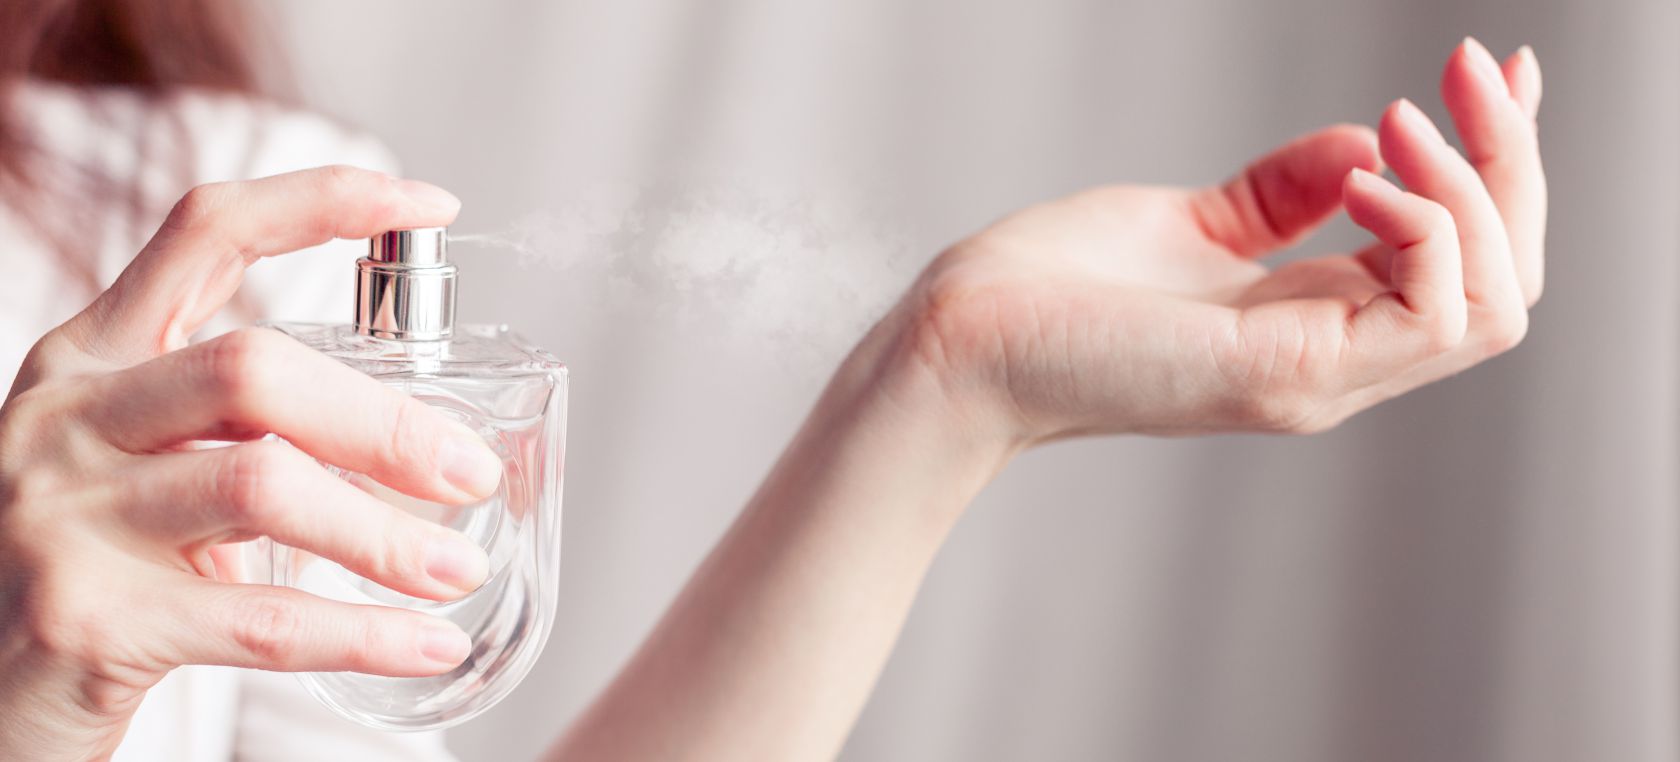 Los seis errores más comunes y fatales que cometes al usar perfume